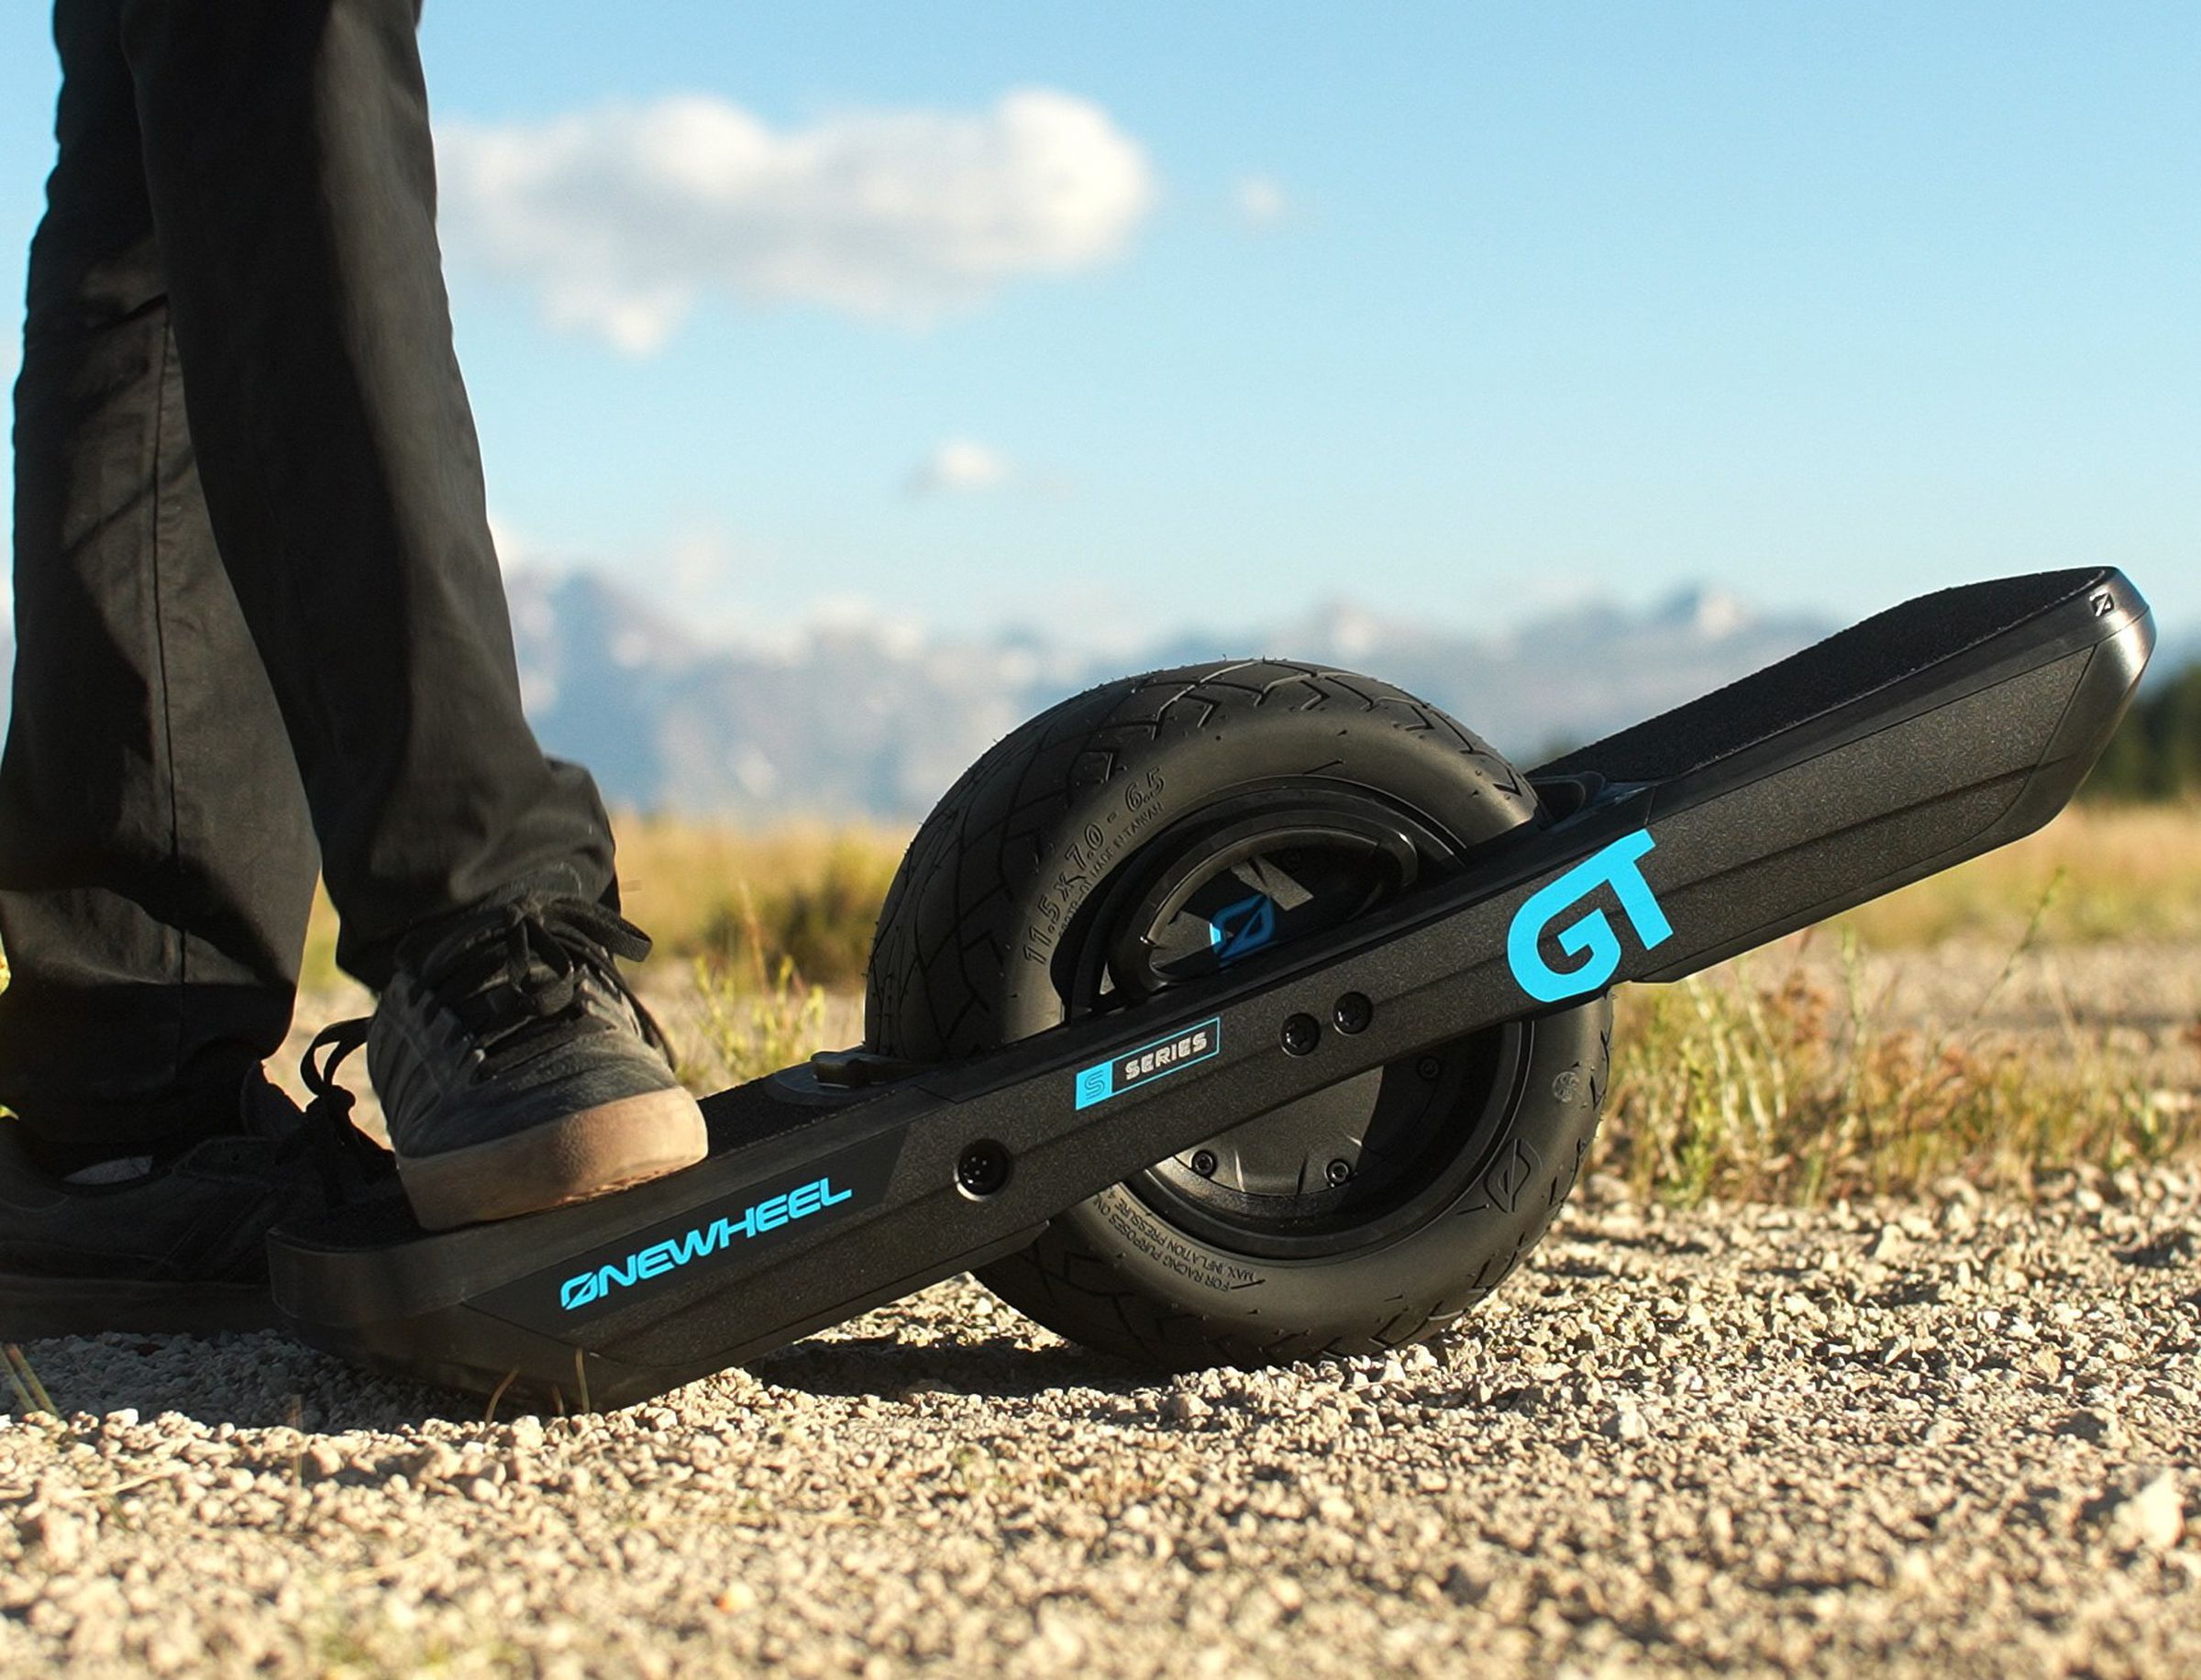 It’s an electric skateboard with a single wheel inside.